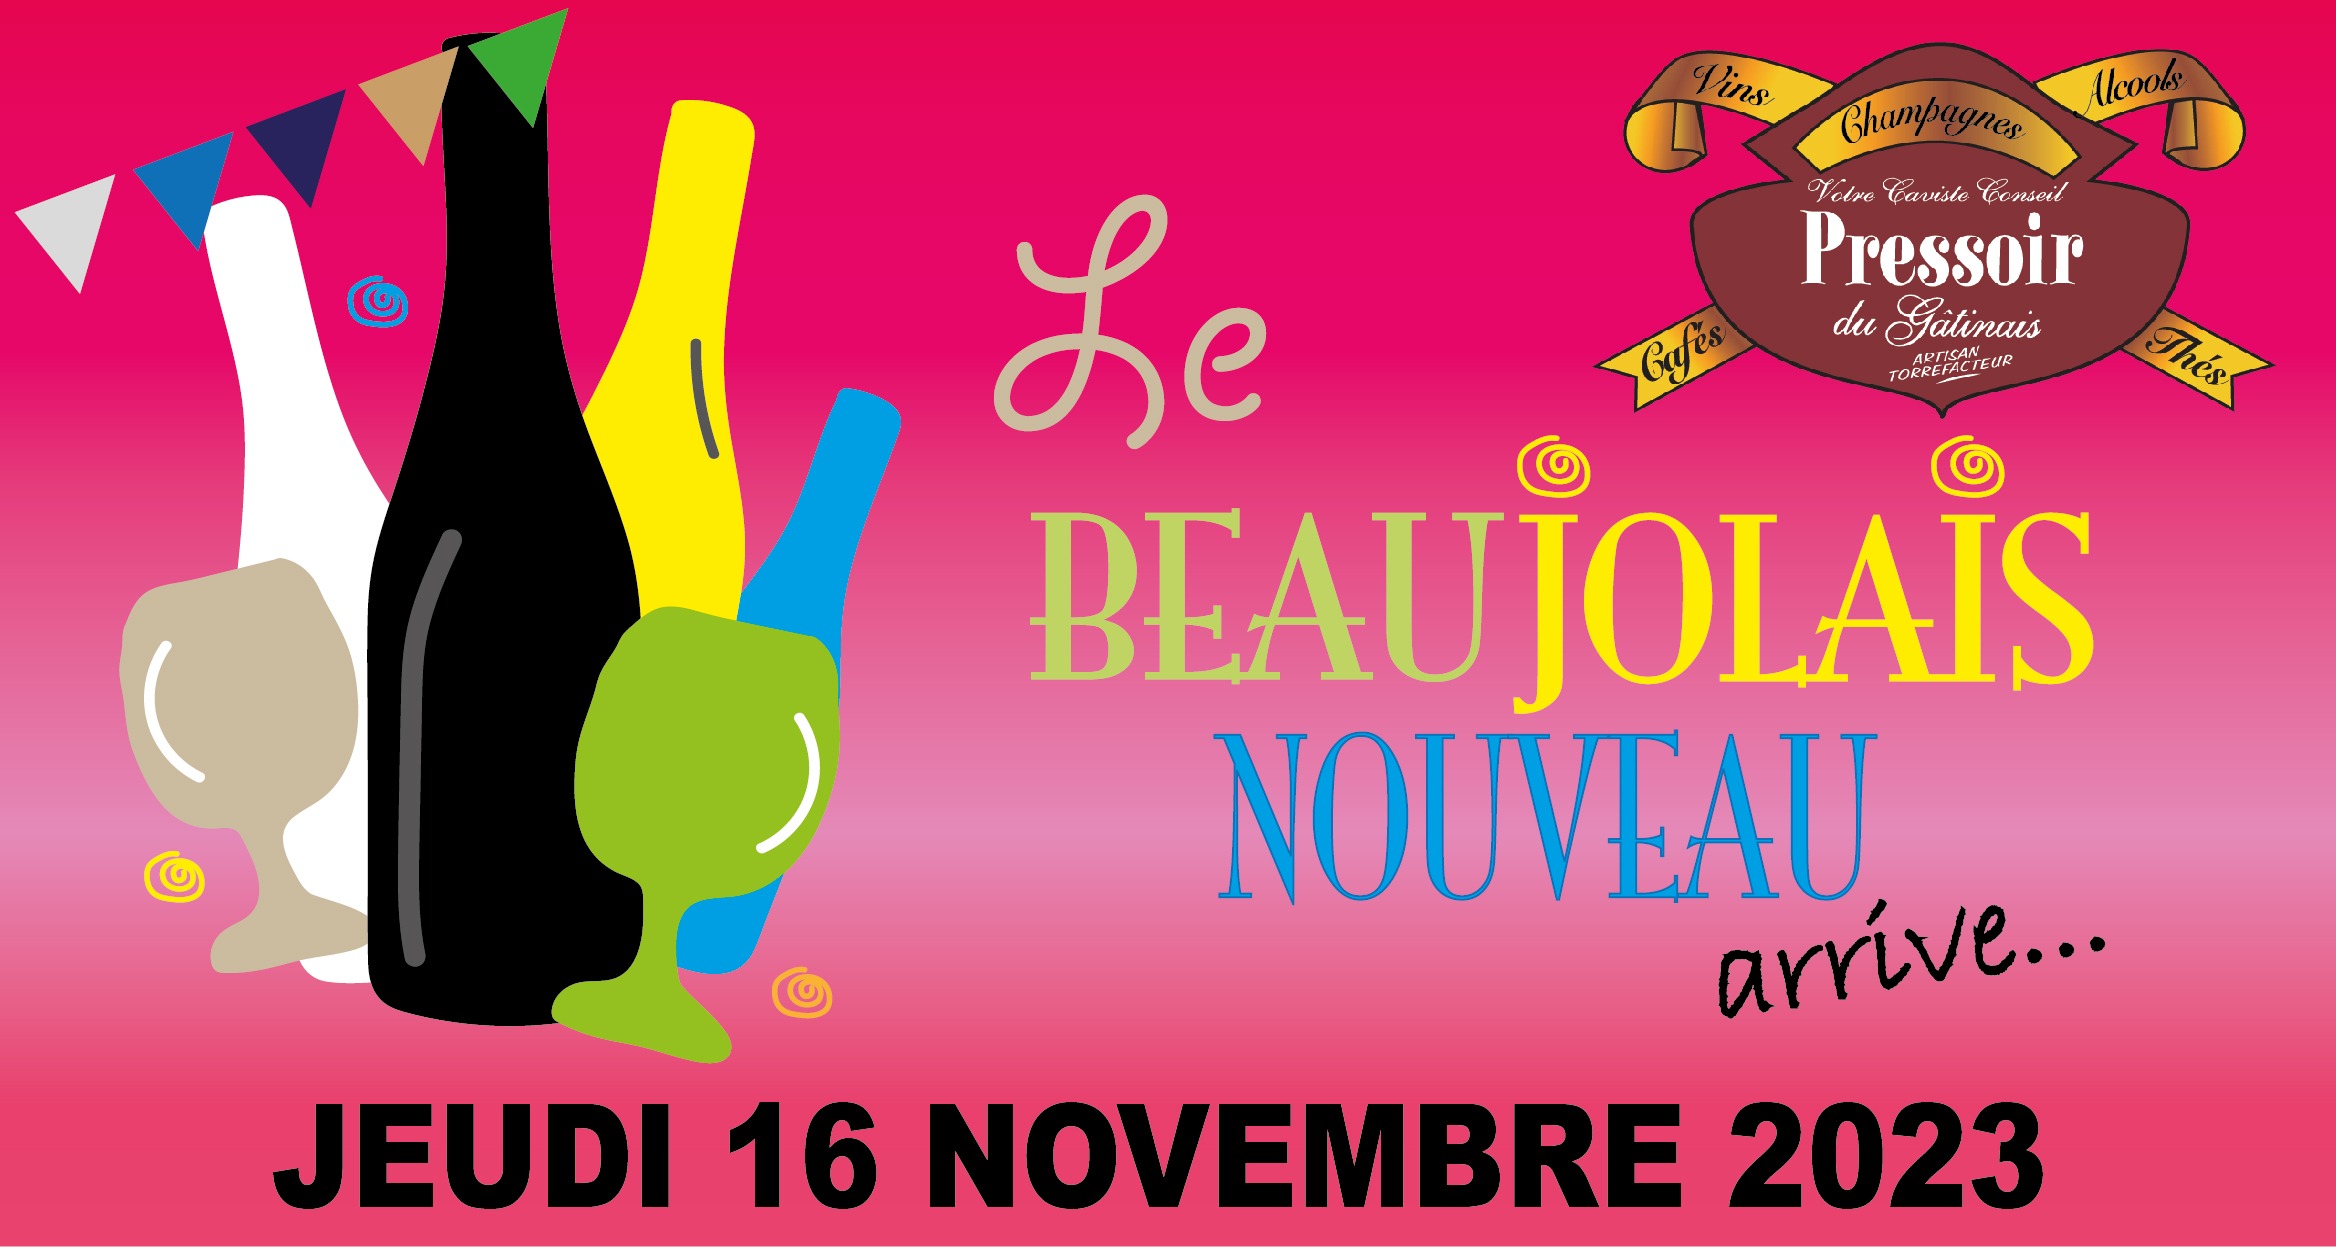 Invitation pour l'arrivée du Beaujolais Nouveau du jeudi 16 novembre 2023